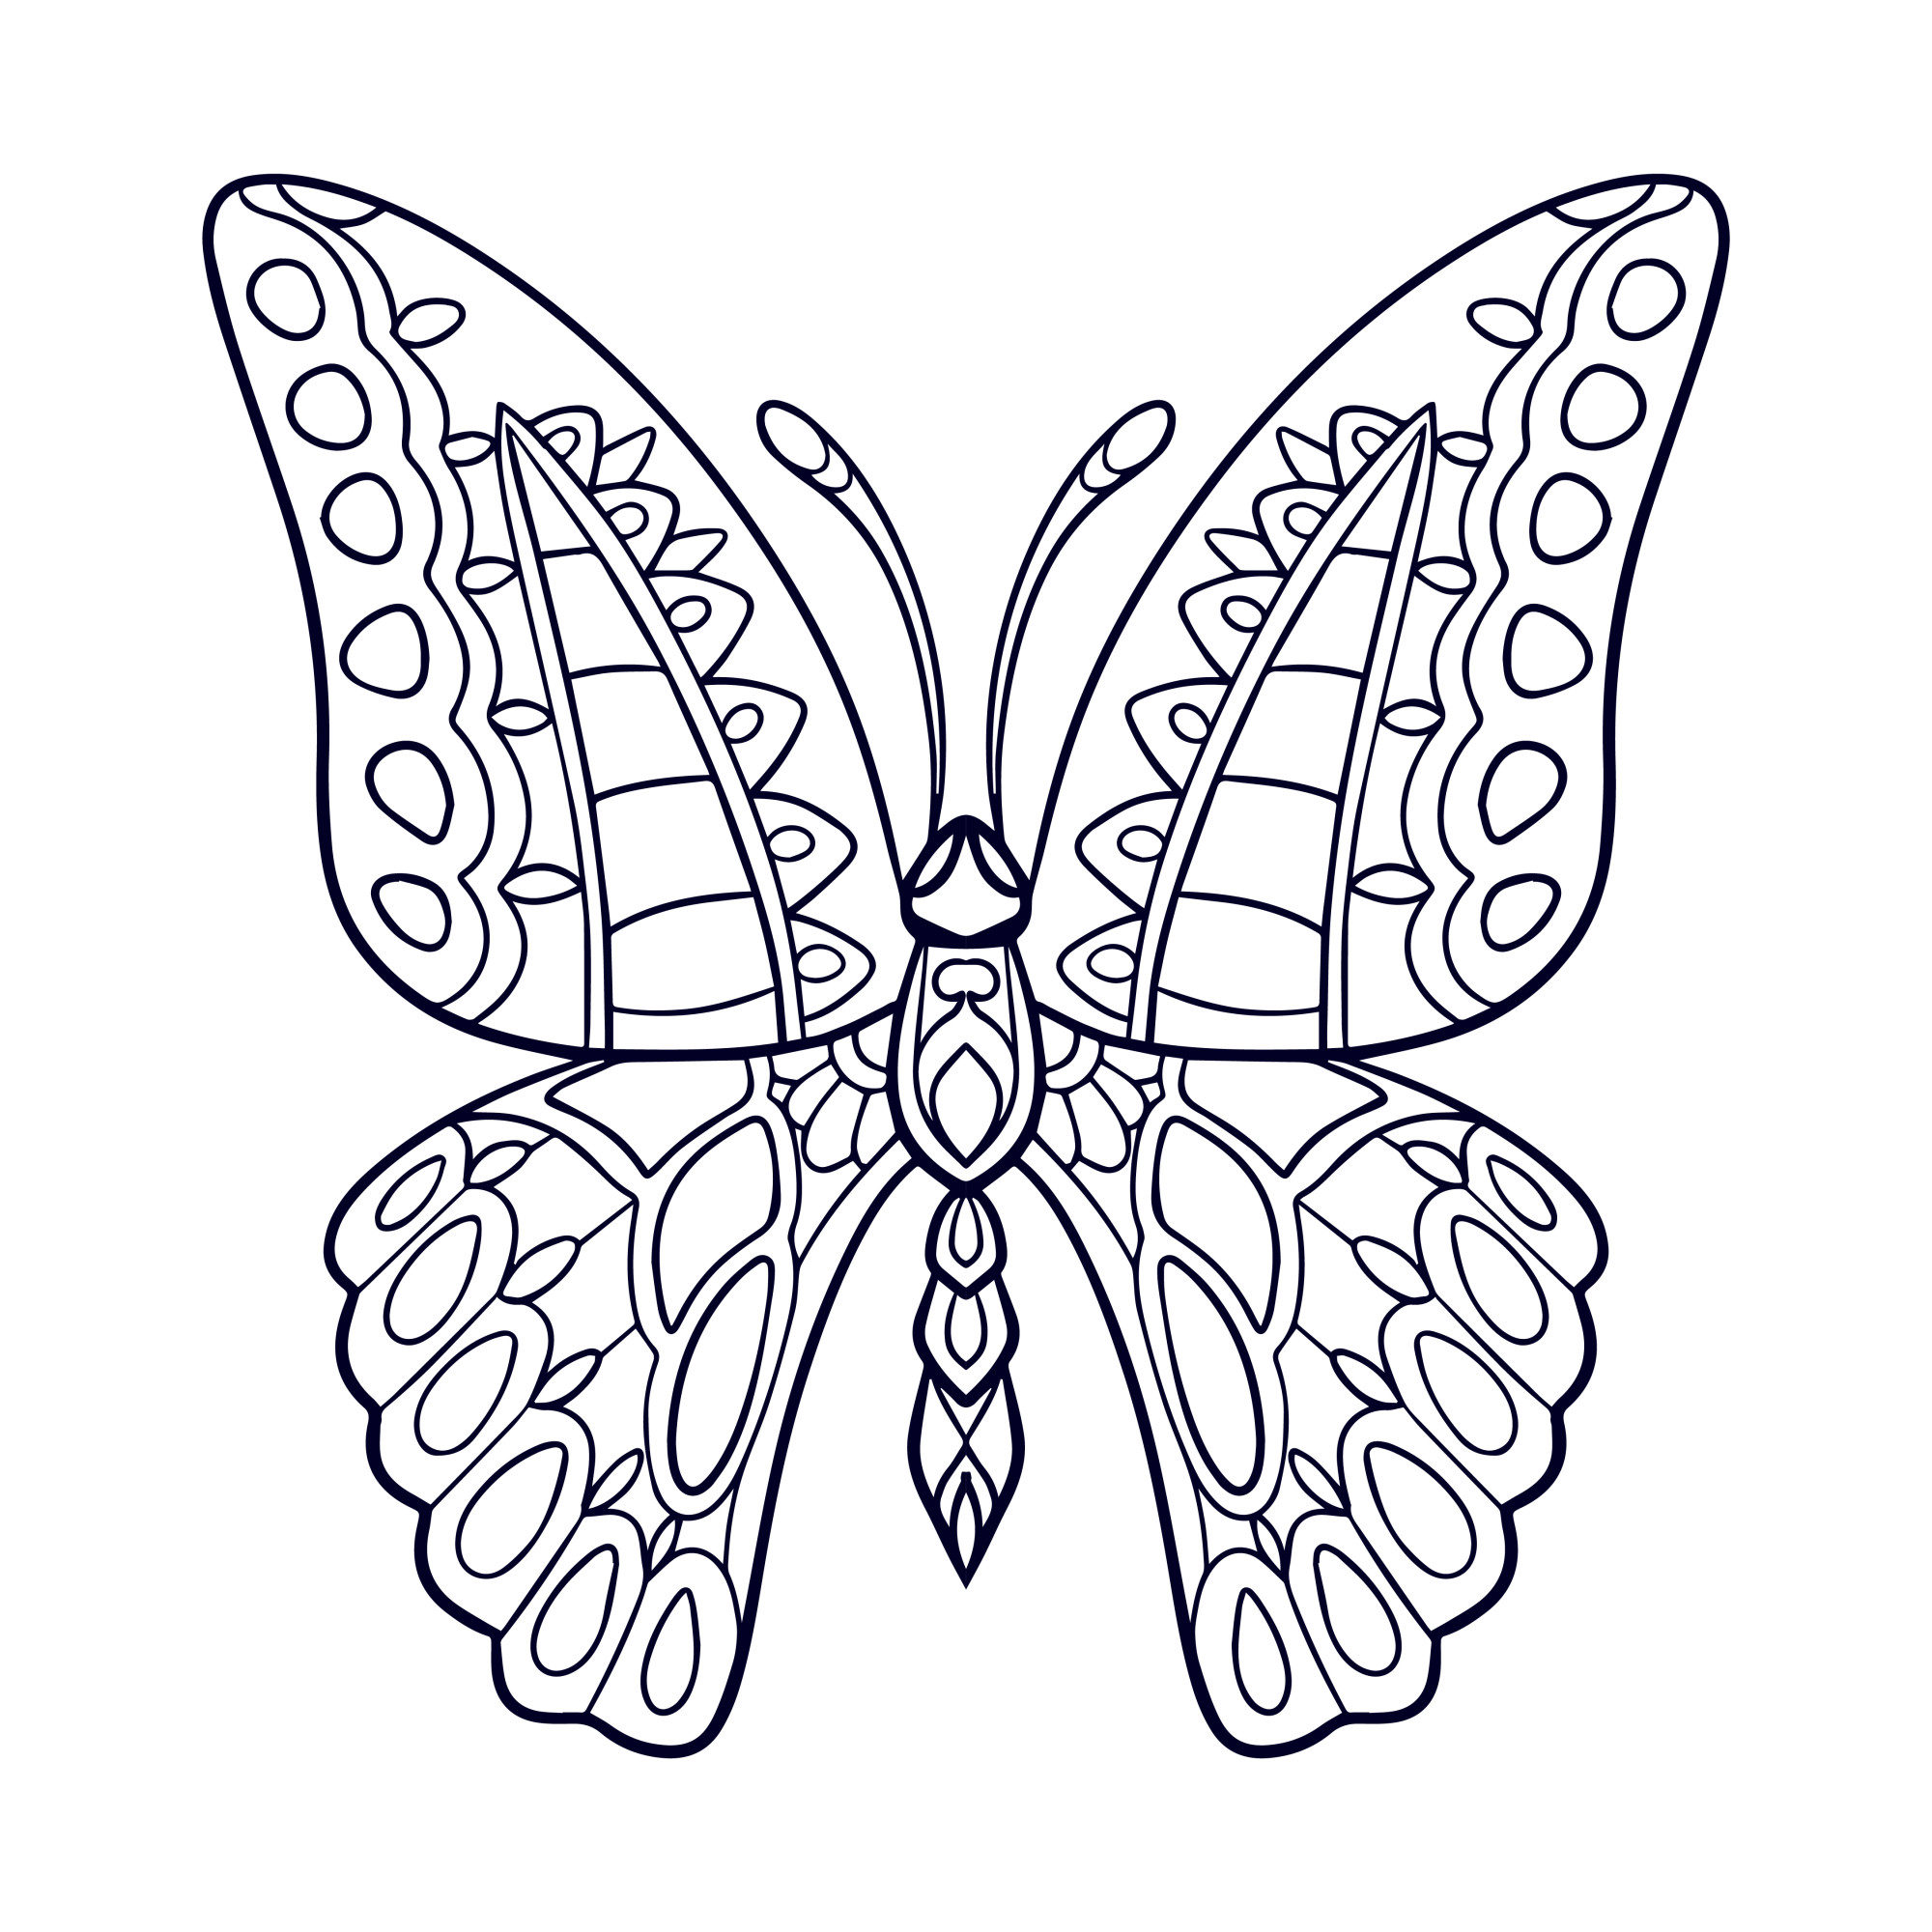 Раскраска для детей: бабочка с нежными узорами на крыльях